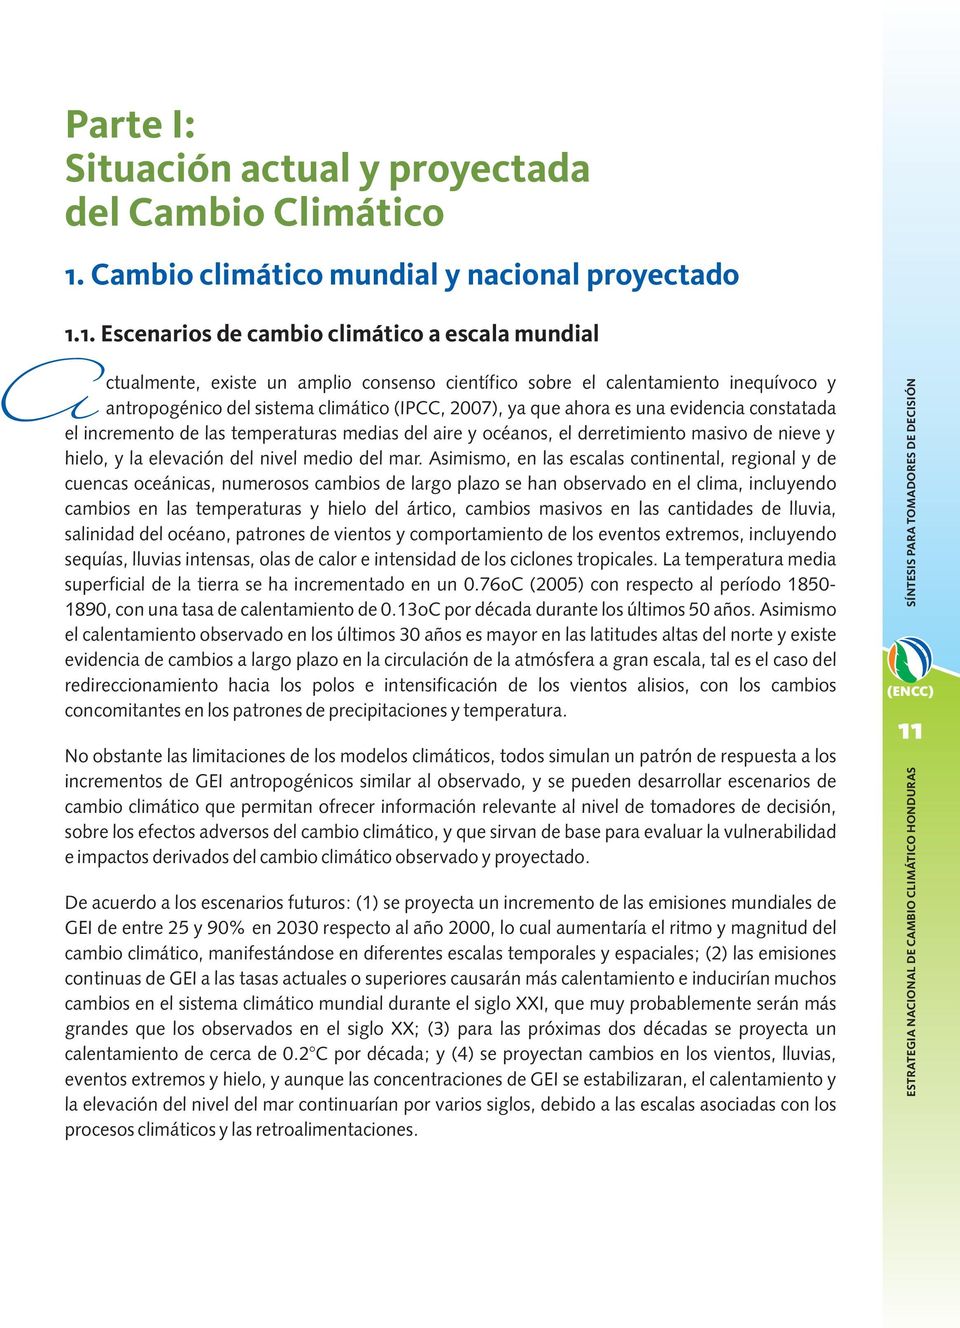 1. Escenarios de cambio climático a escala mundial A ctualmente, existe un amplio consenso científico sobre el calentamiento inequívoco y antropogénico del sistema climático (IPCC, 2007), ya que